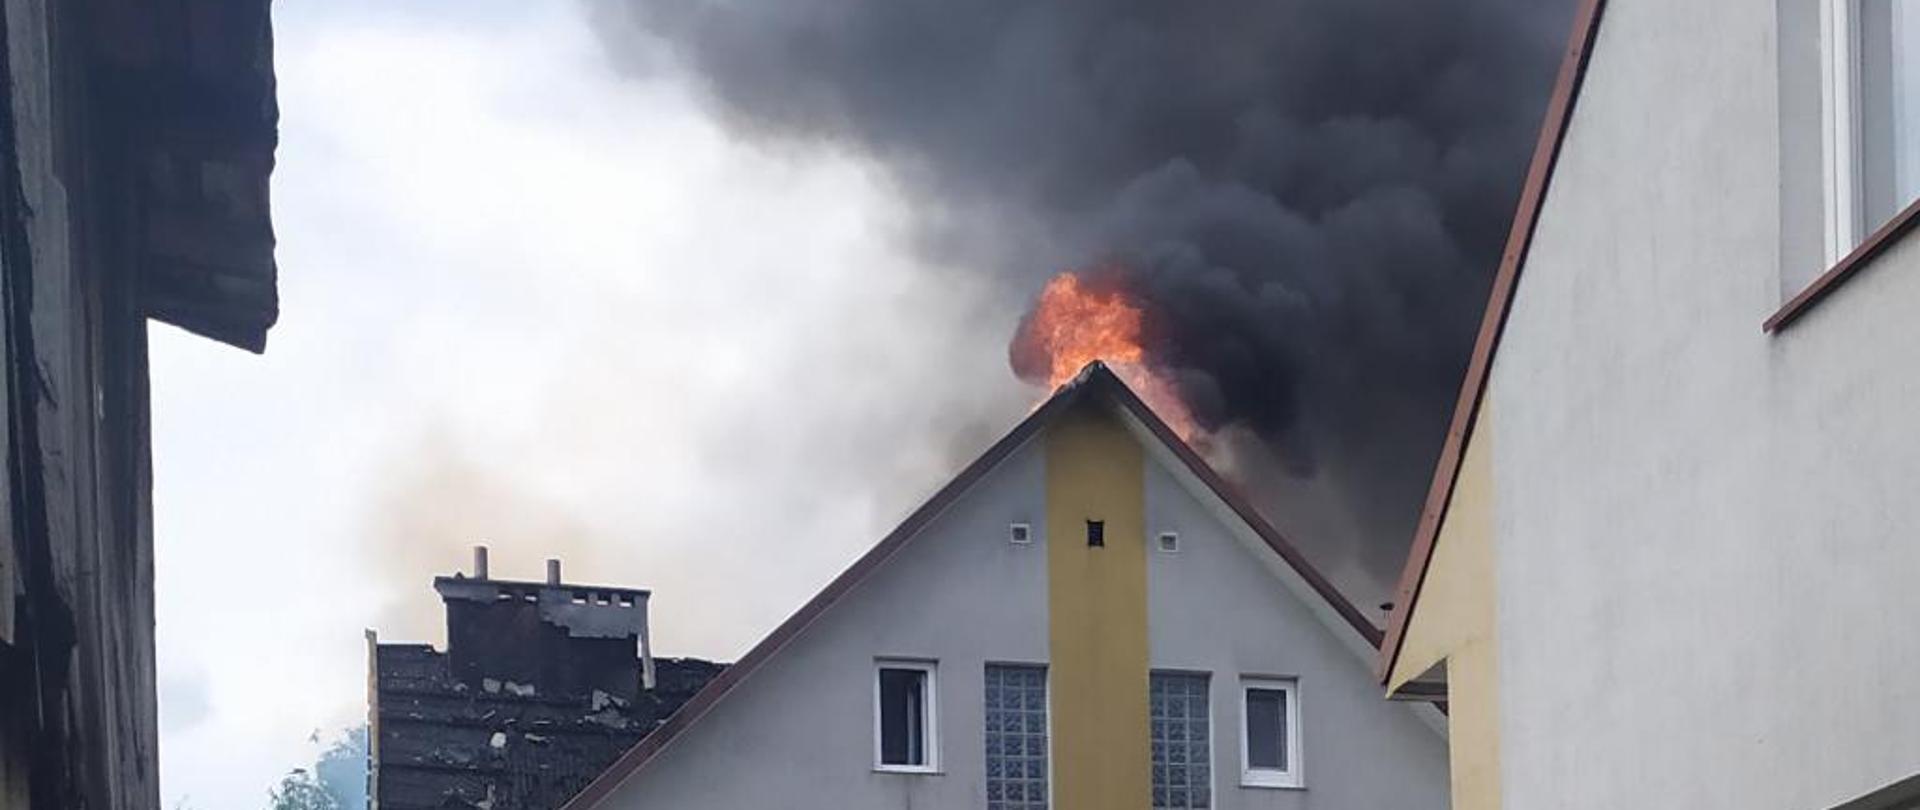 na zdjęciu widać pożar dachu budynku